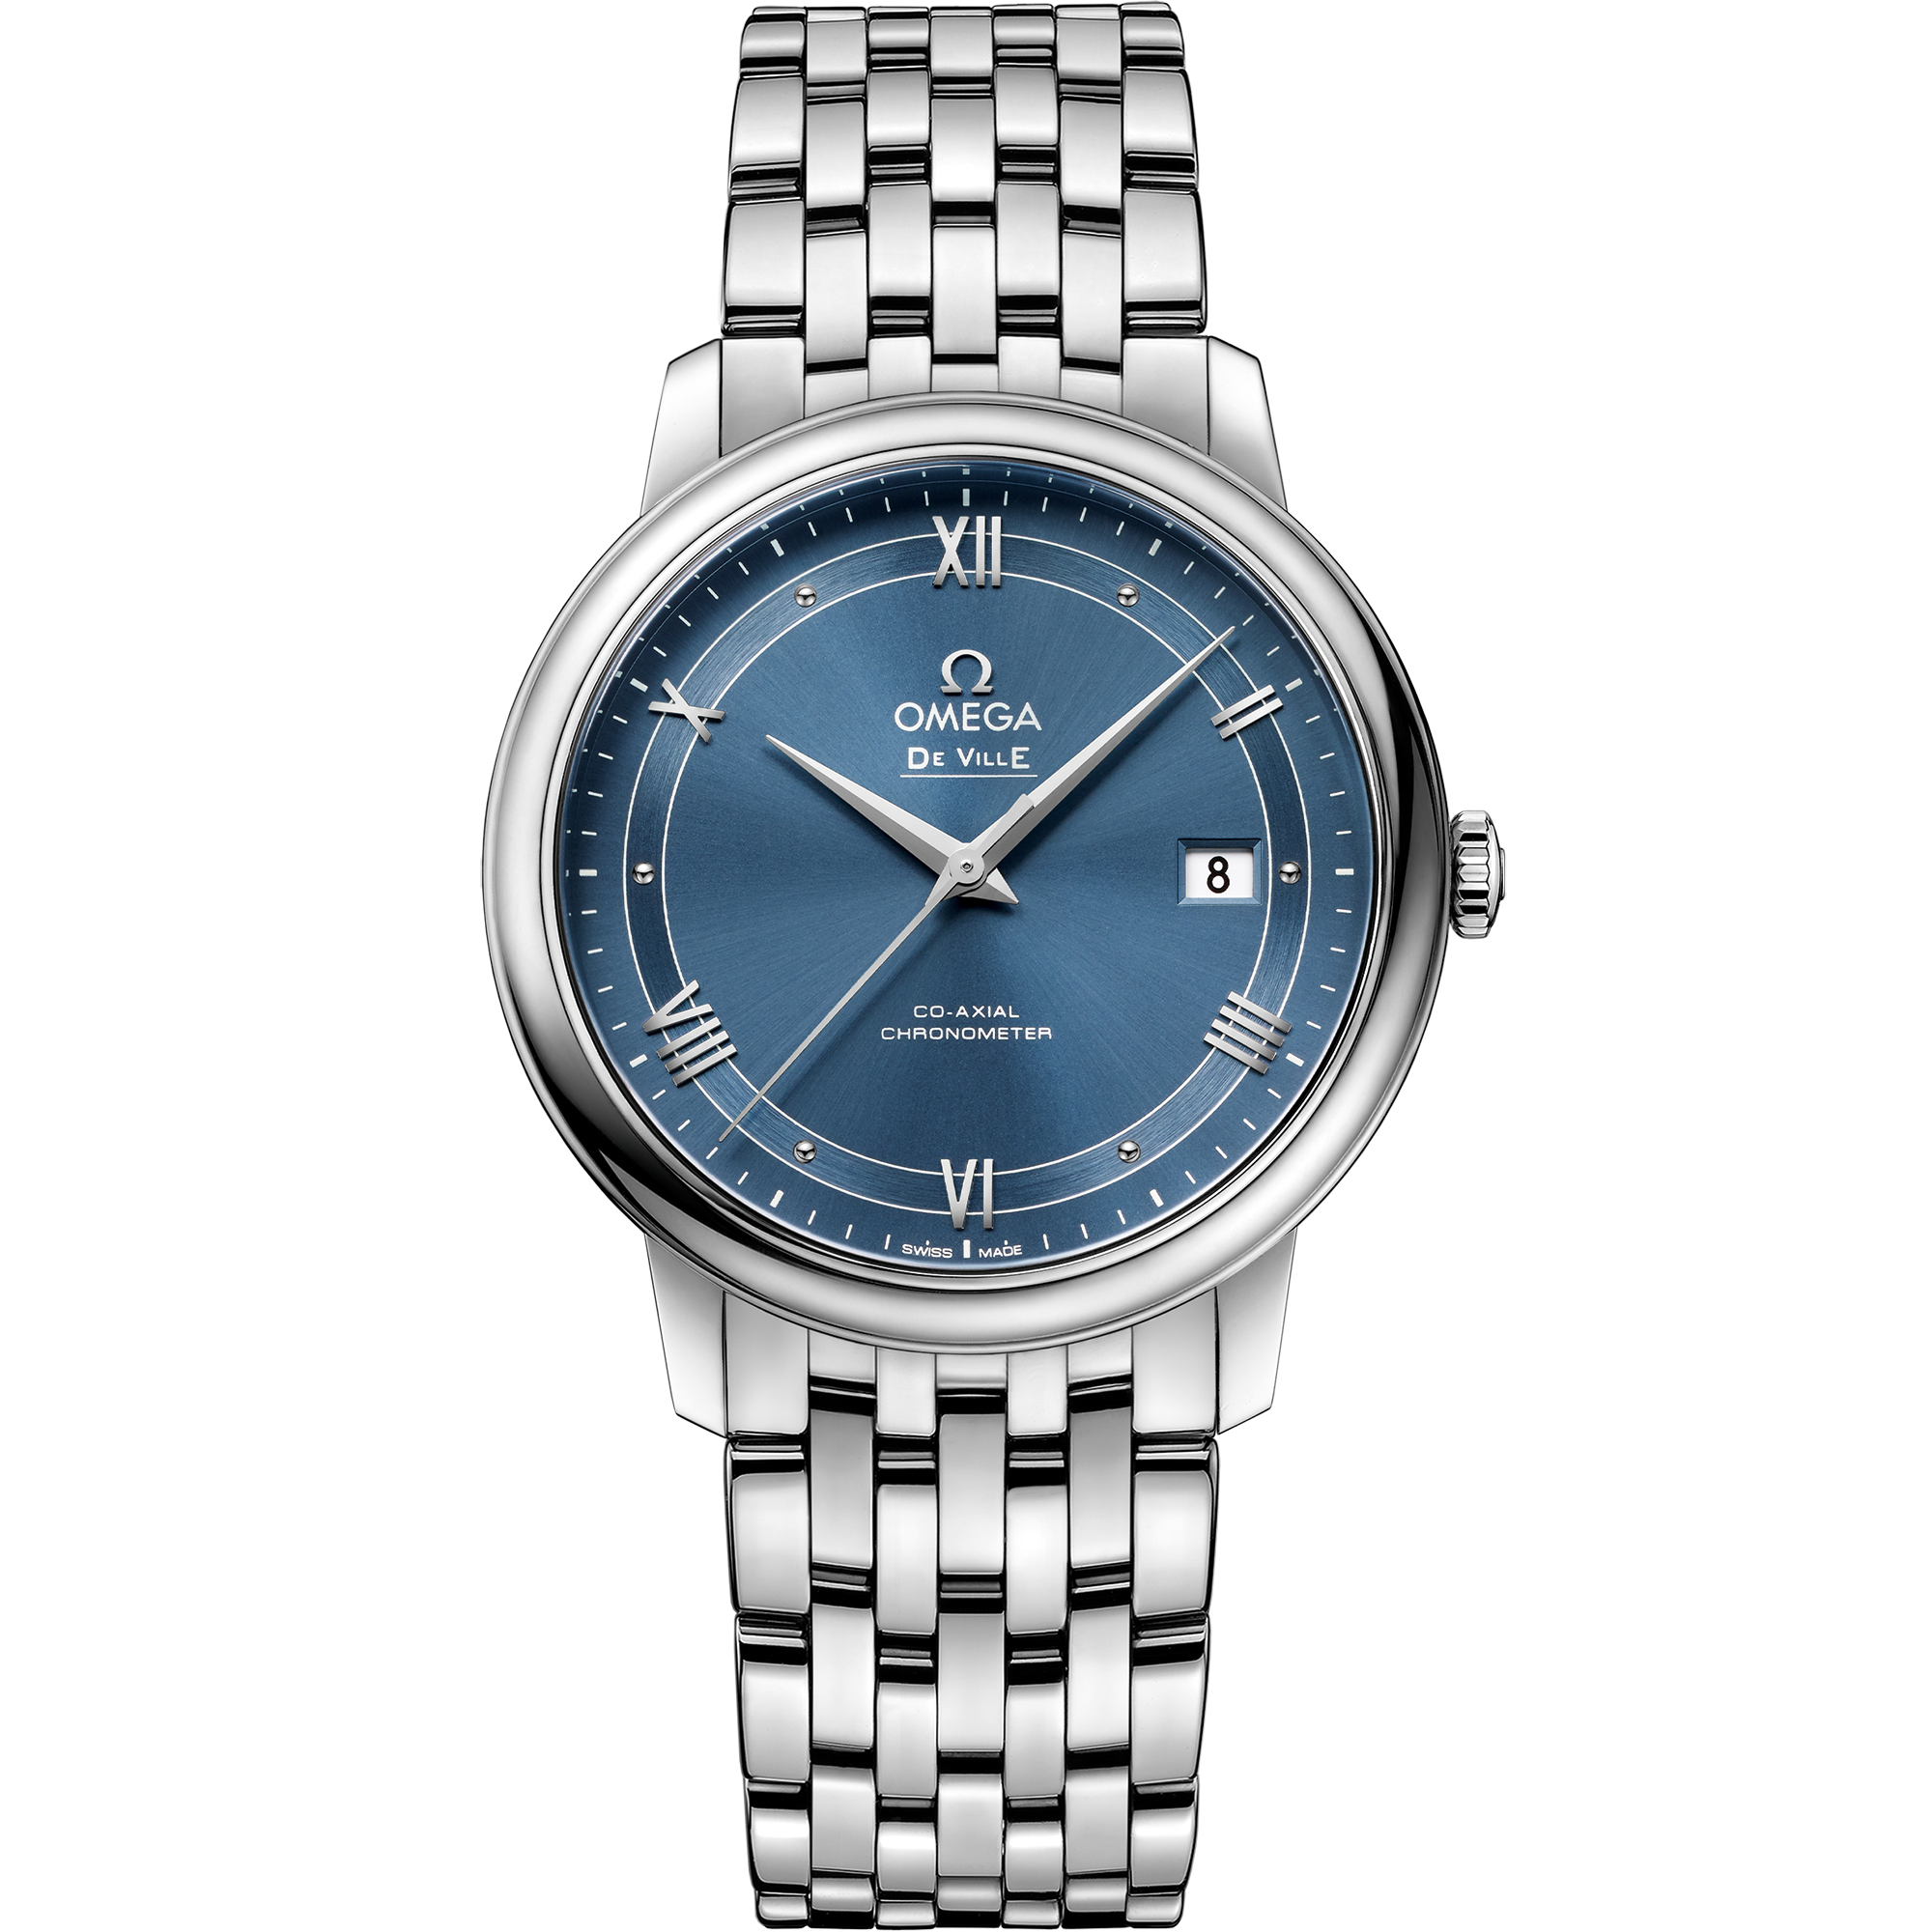  dial watch on Steel case with Steel bracelet - De Ville 39.5 mm, steel on steel - 424.10.40.20.03.002